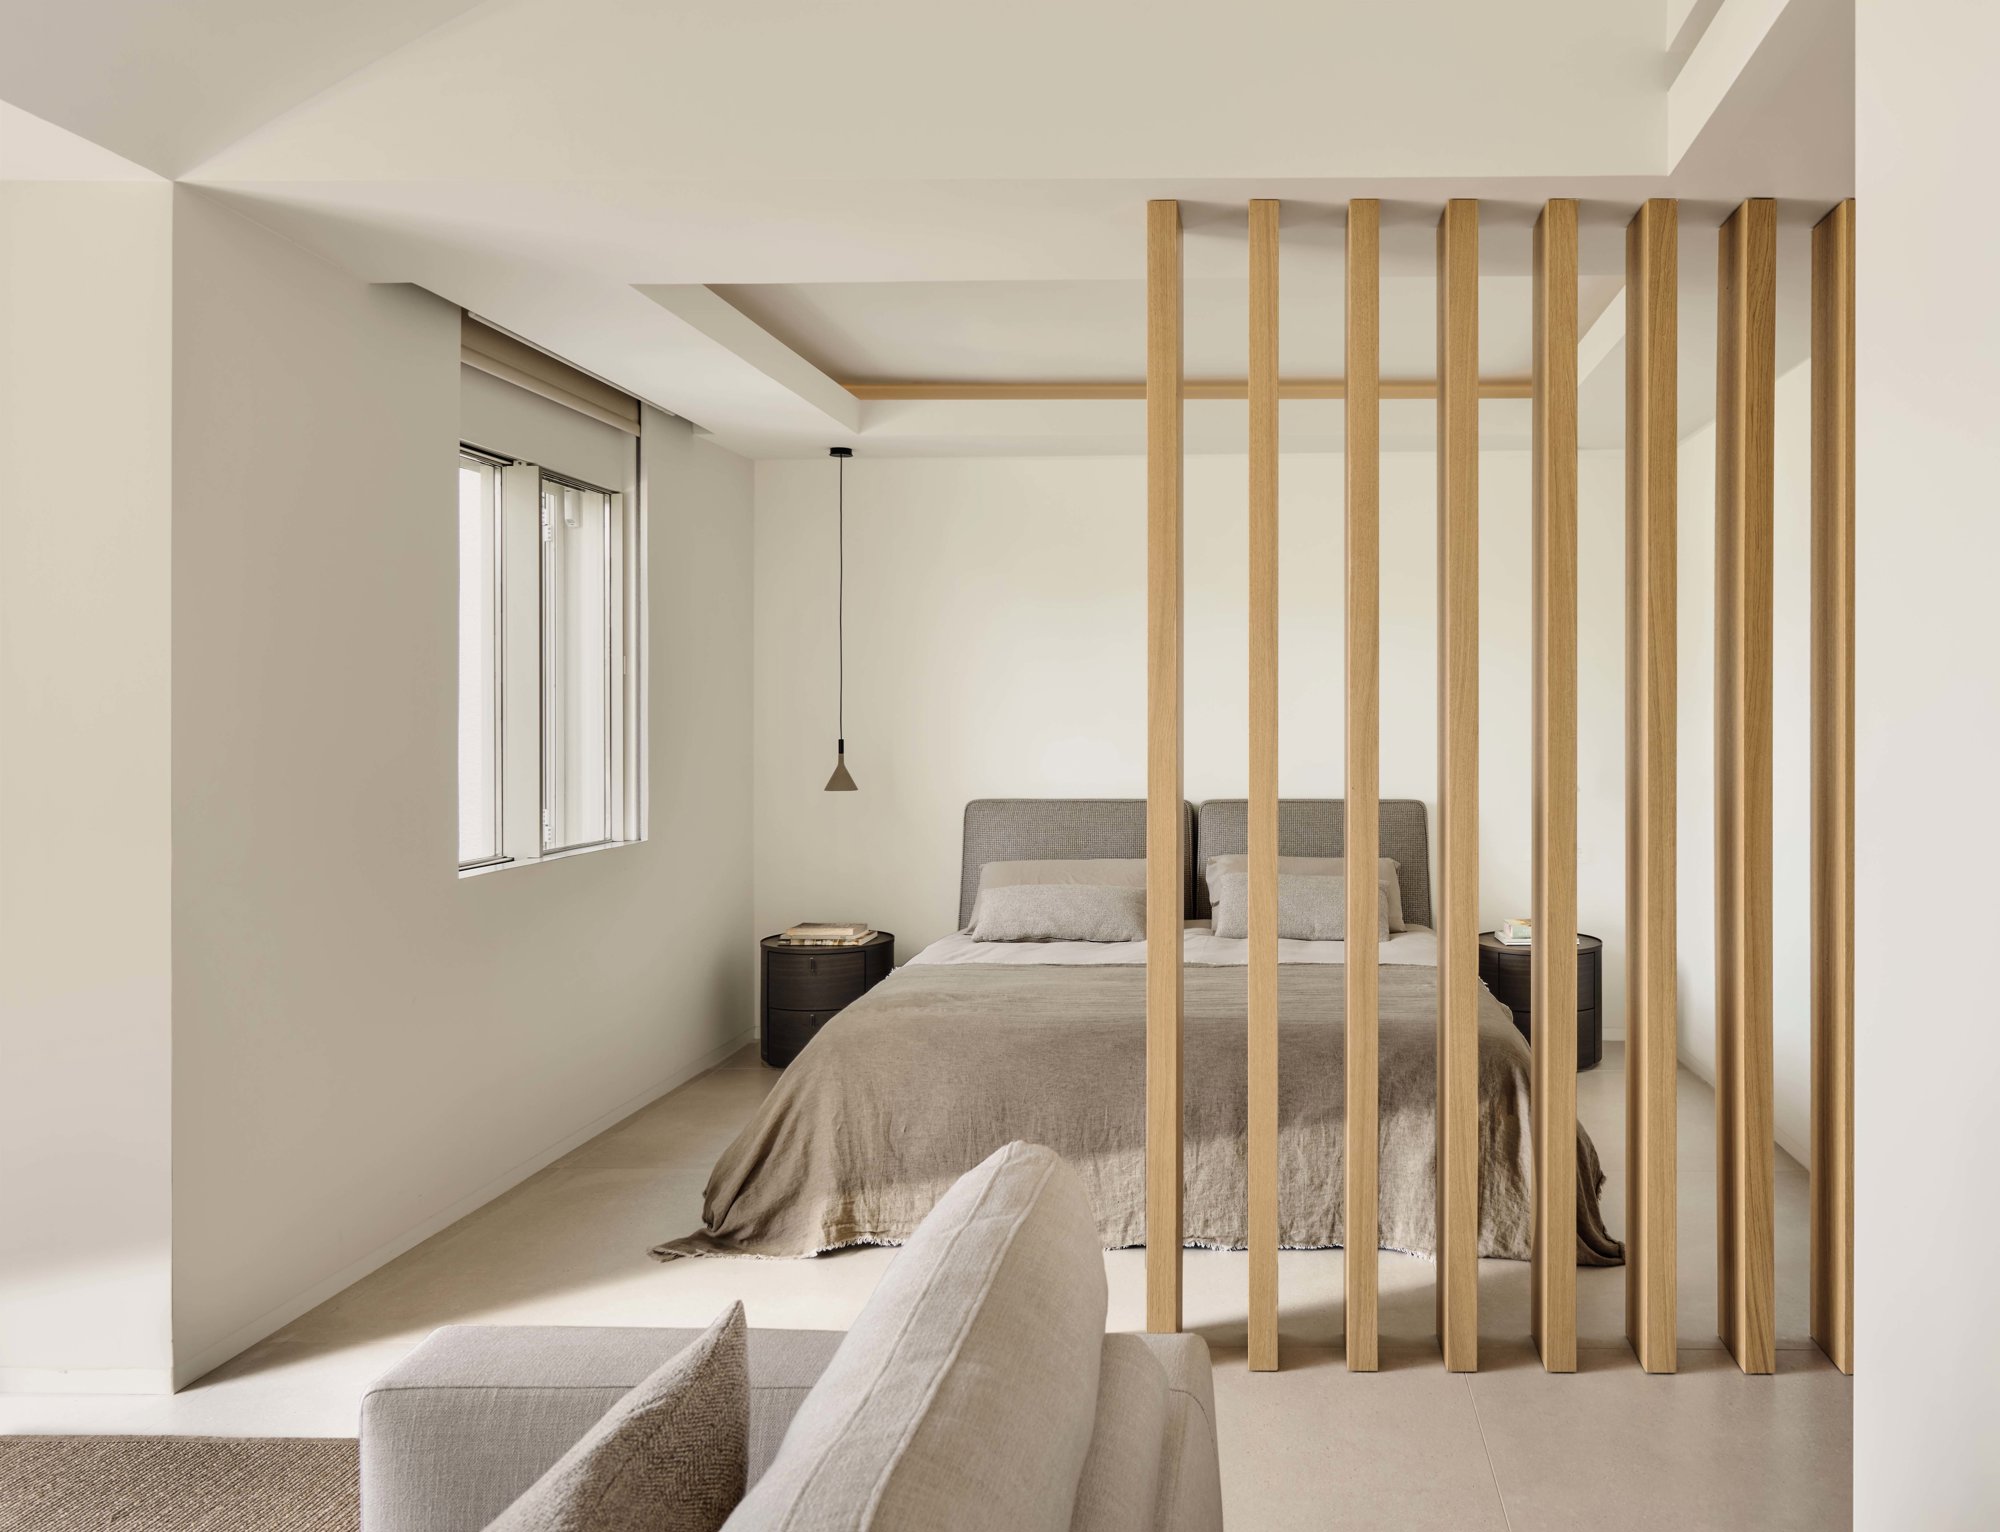  dormitorio con separador con vigas de madera